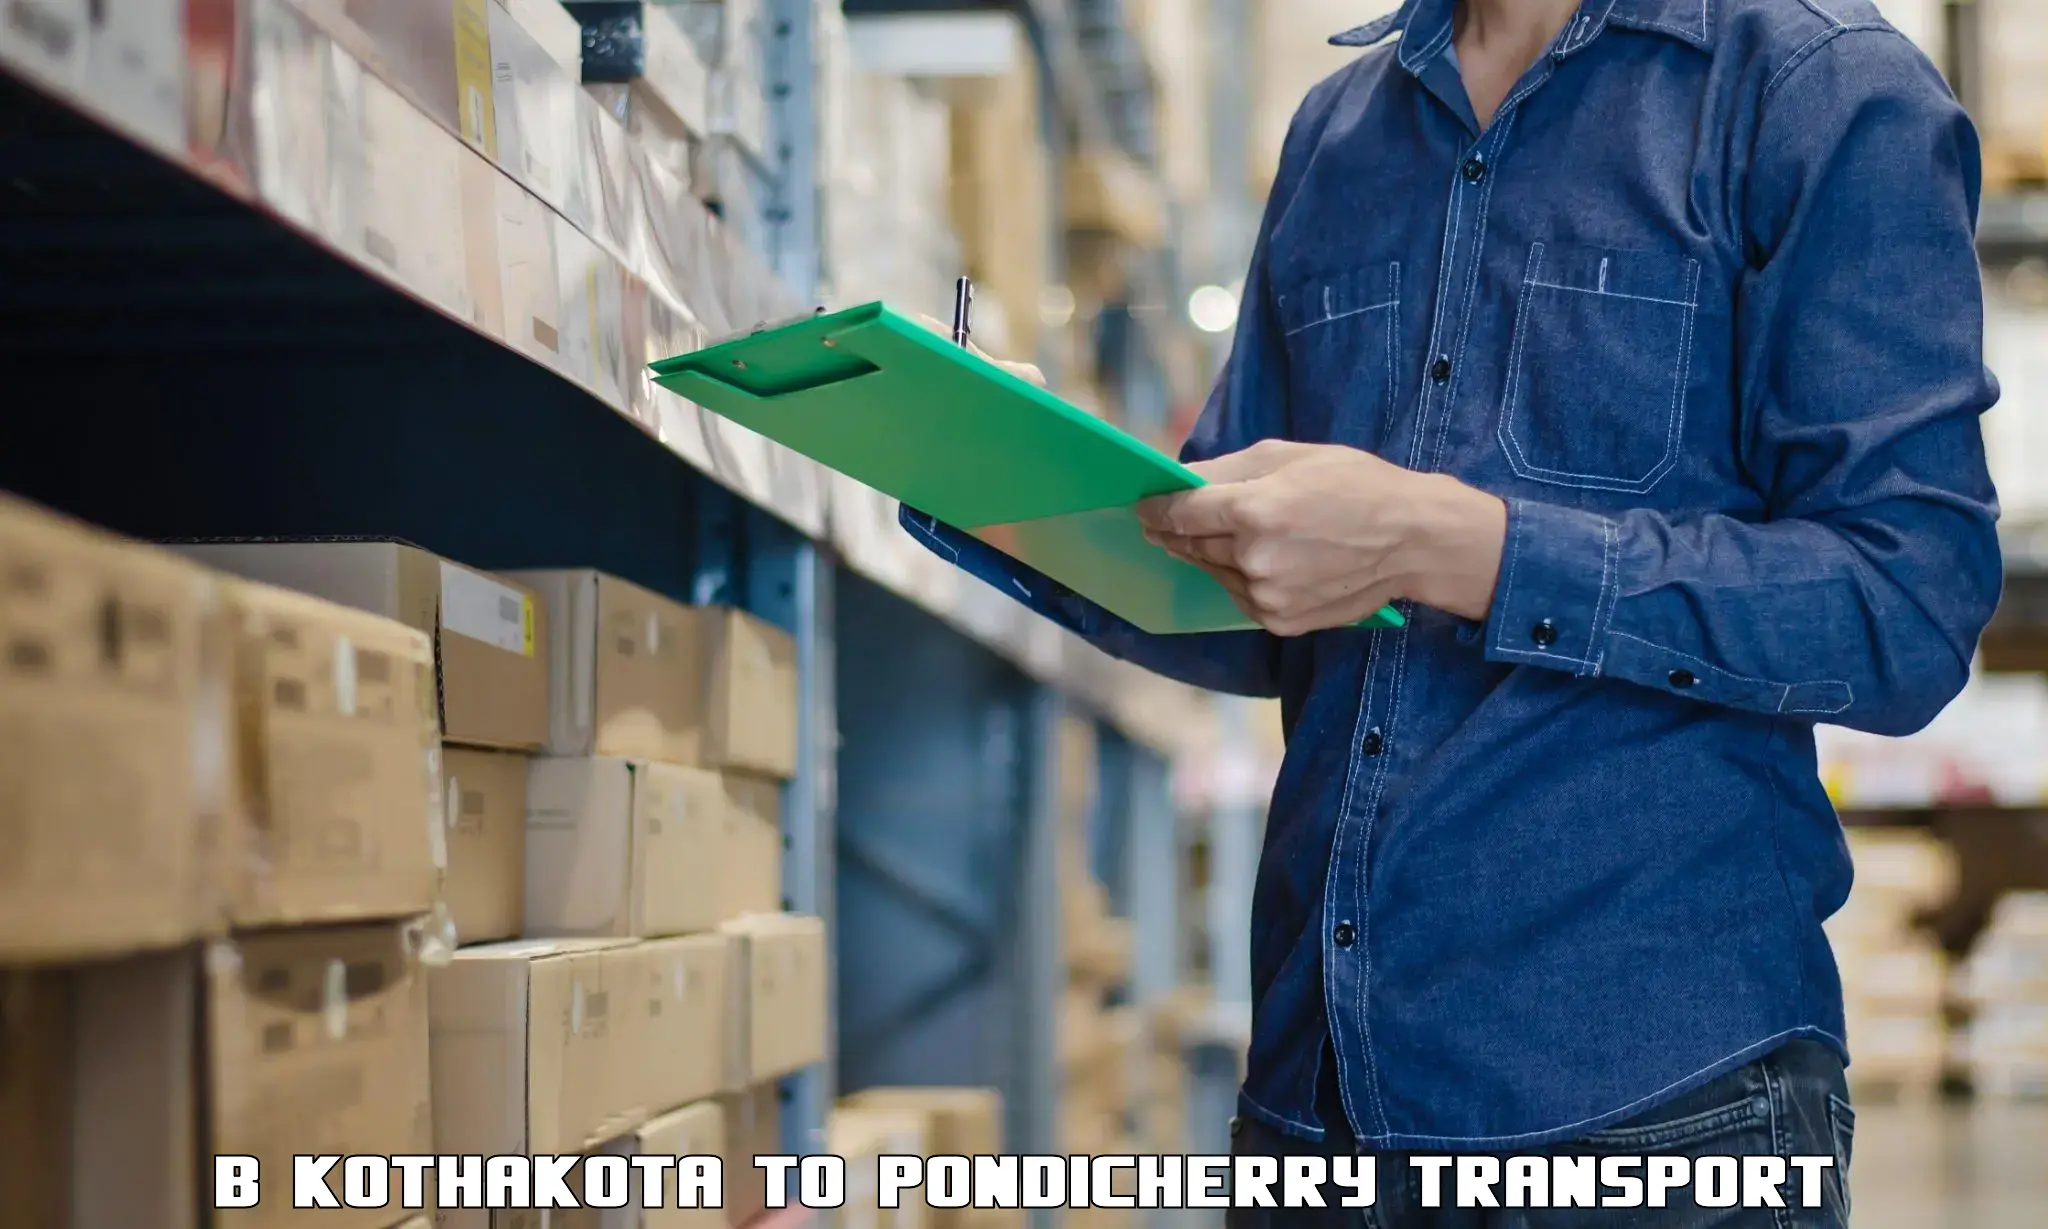 Transport shared services B Kothakota to Pondicherry University